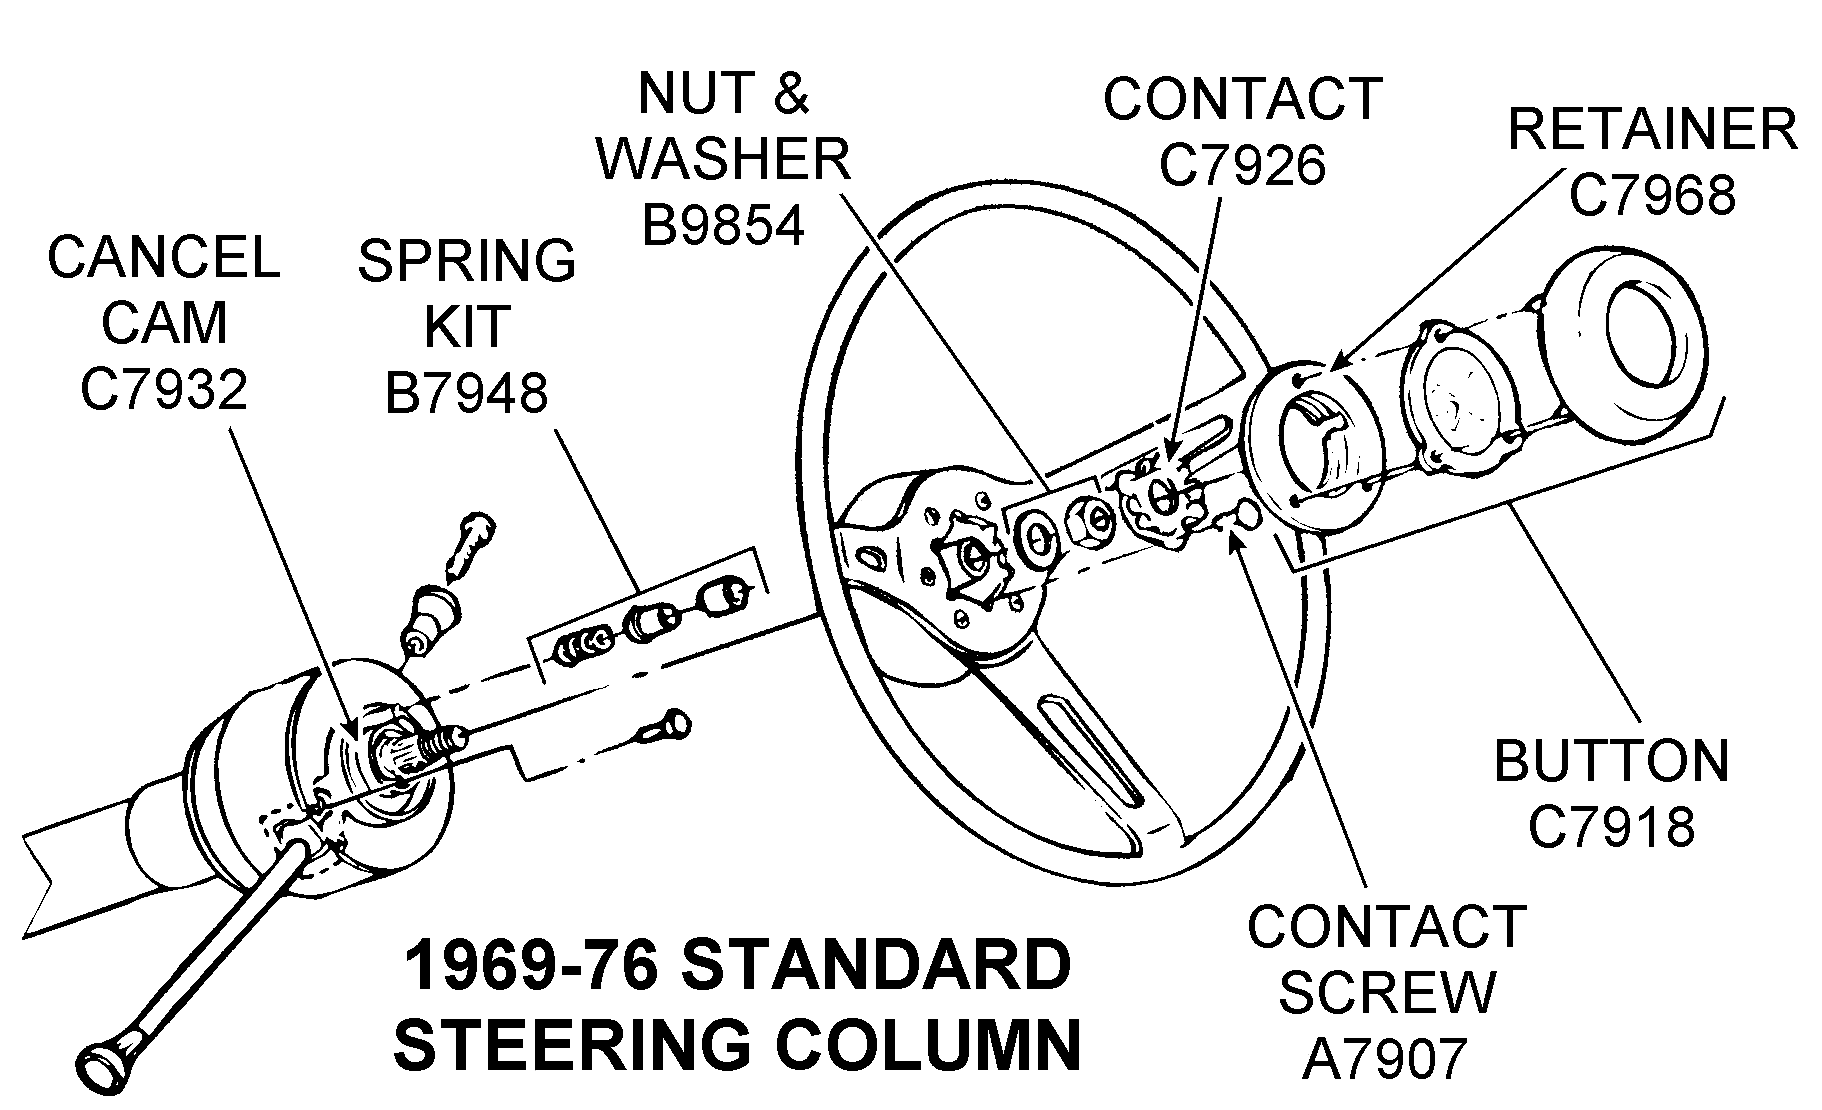 1969-76 Standard Steering Column - Diagram View